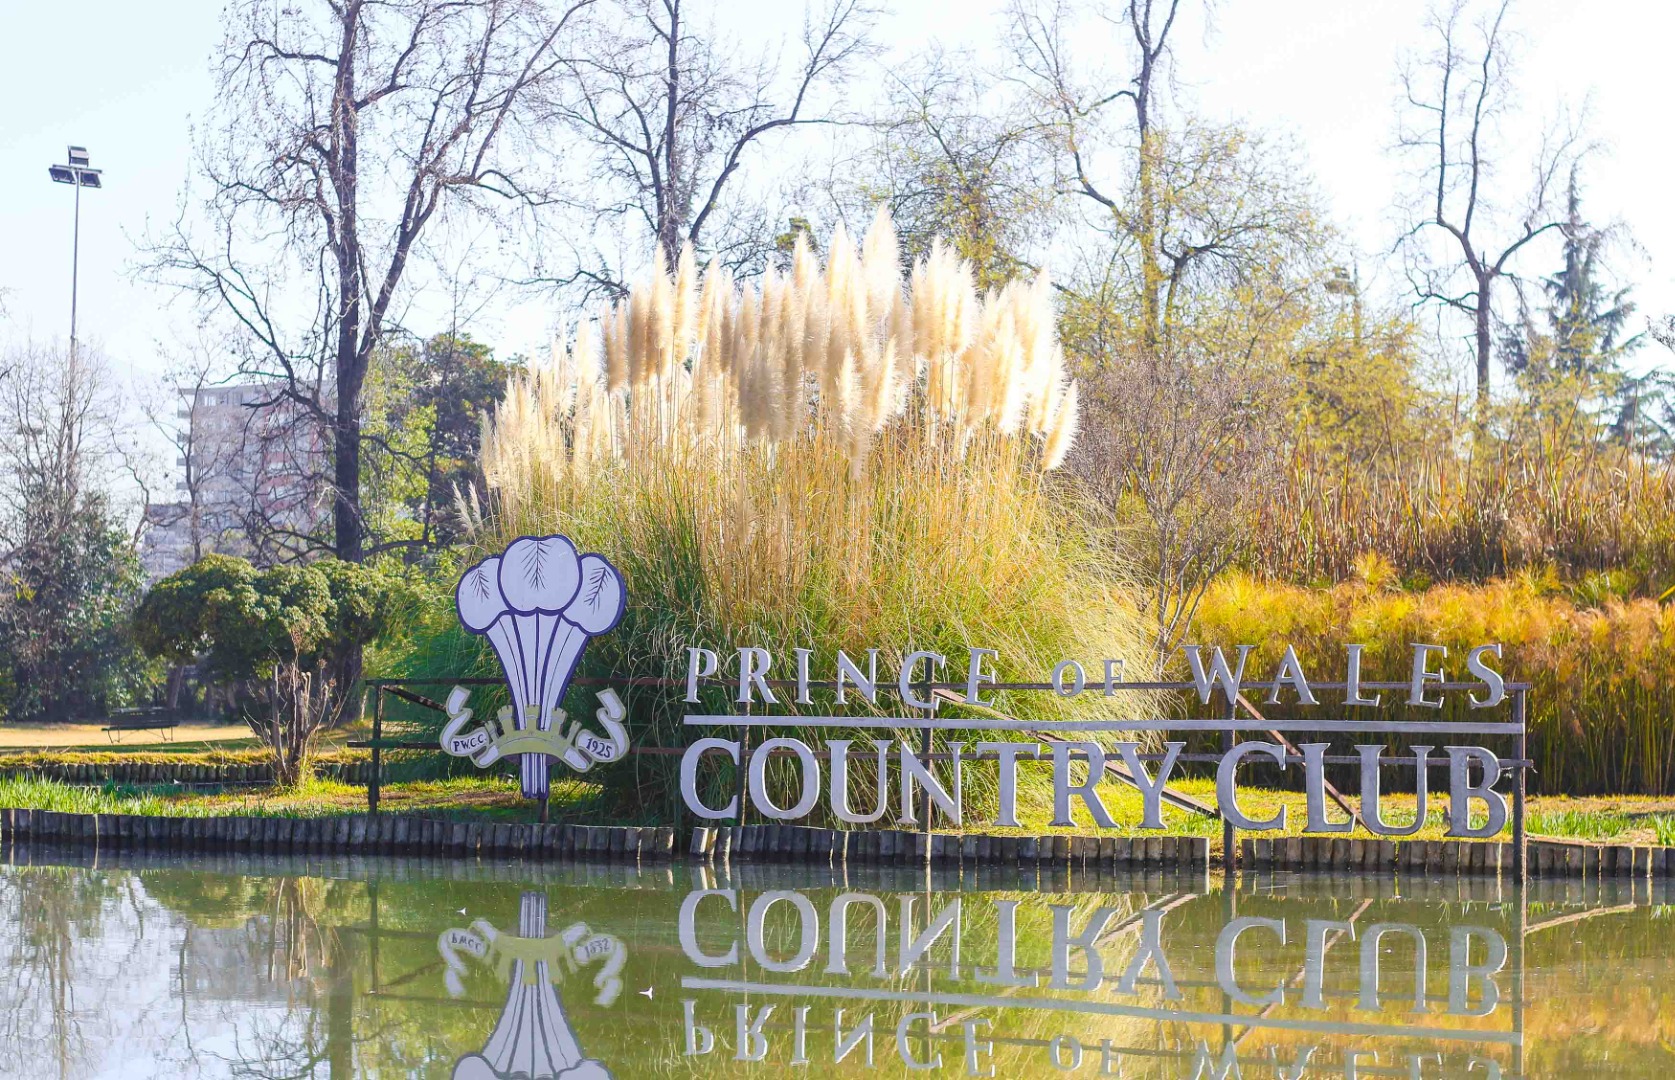 La sede del golf: Prince of Wales Country Club